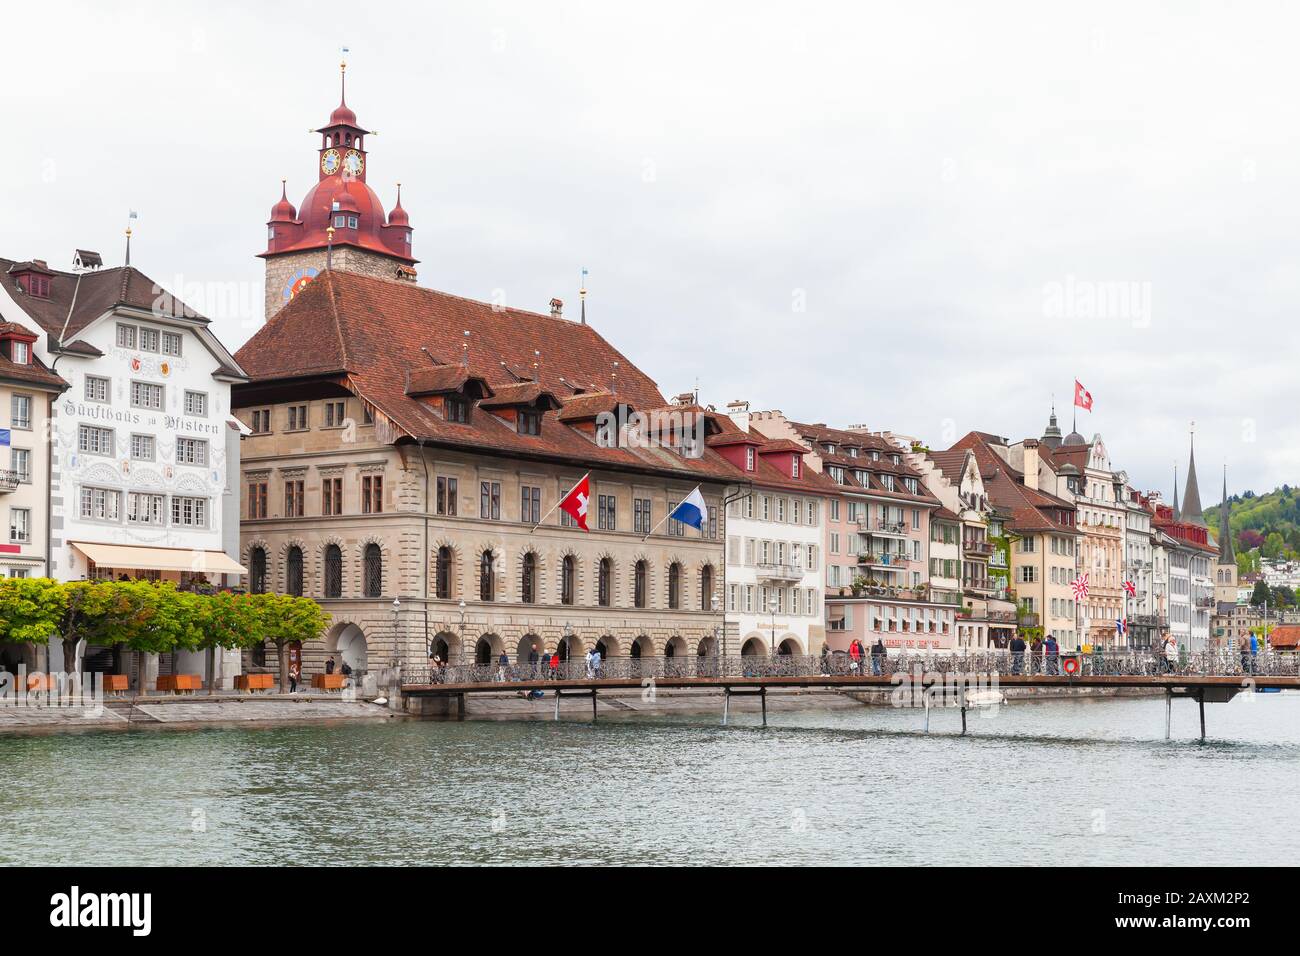 Lucerna, Svizzera - 7 maggio 2017: Paesaggio costiero con torre dell'orologio del vecchio municipio sullo sfondo. La gente comune cammina per la strada Foto Stock